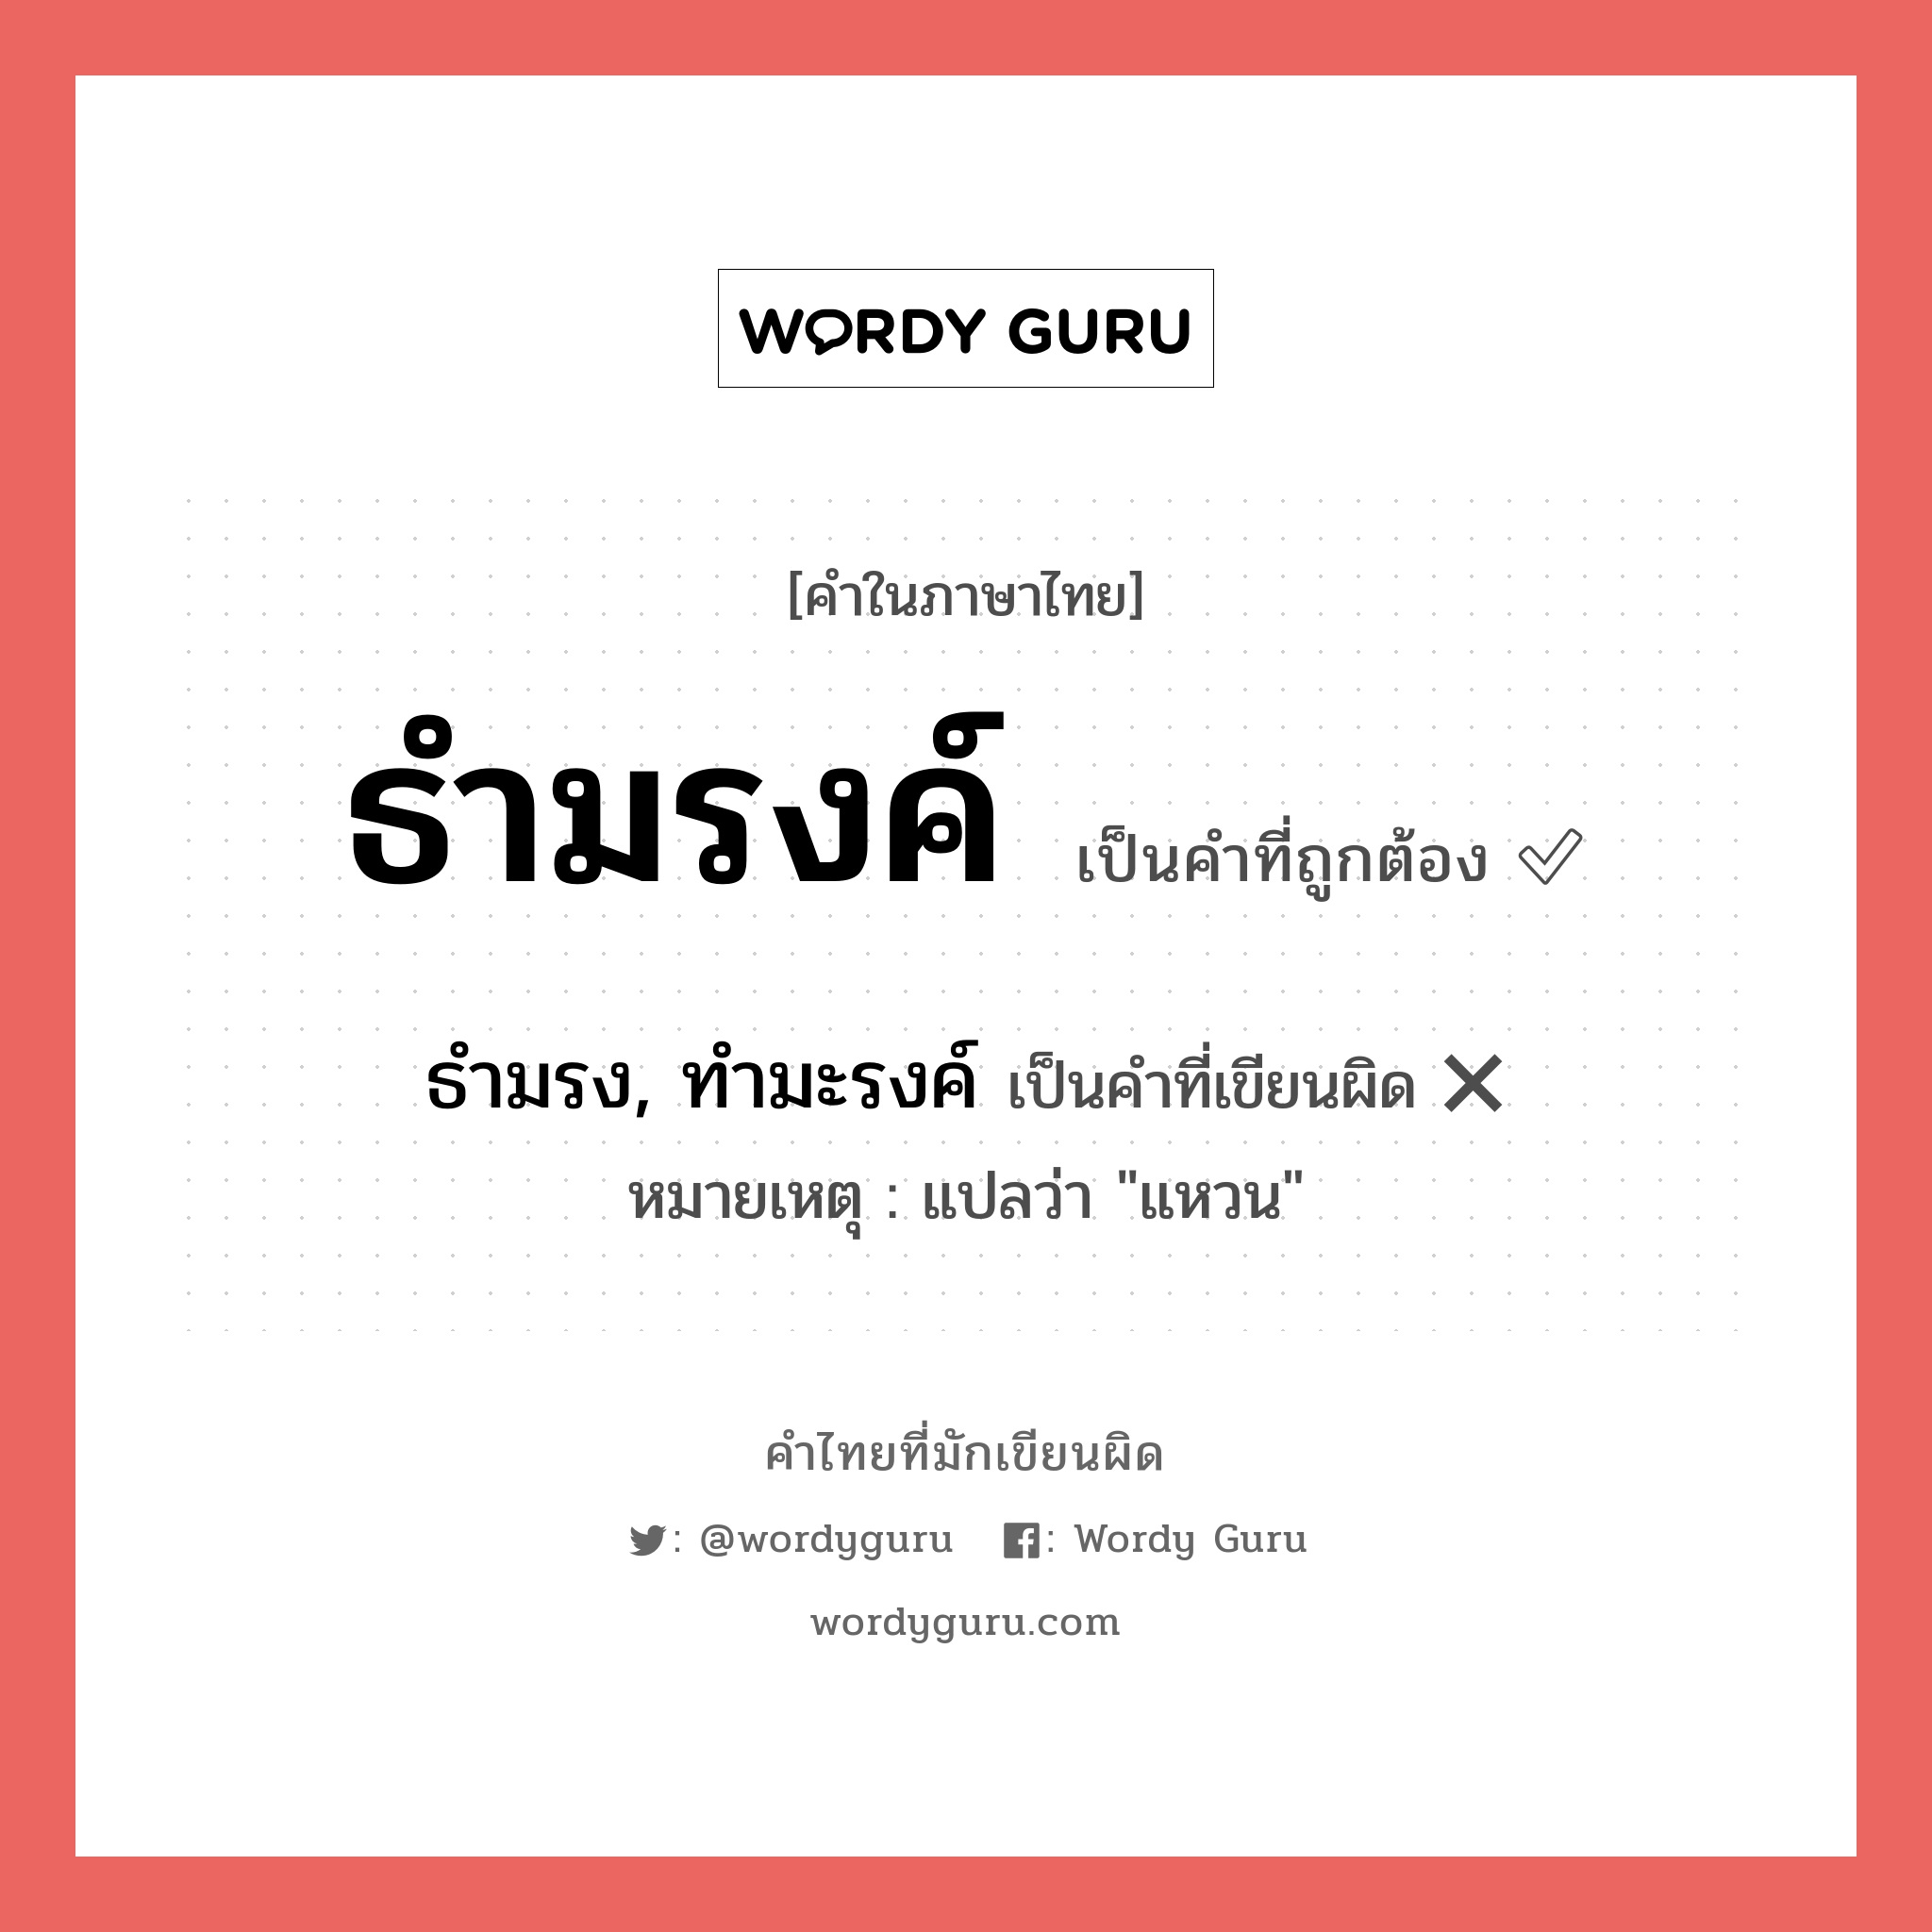 ธำมรงค์ หรือ ธำมรง, ทำมะรงค์ คำไหนเขียนถูก?, คำในภาษาไทยที่มักเขียนผิด ธำมรงค์ คำที่ผิด ❌ ธำมรง, ทำมะรงค์ หมายเหตุ แปลว่า "แหวน"